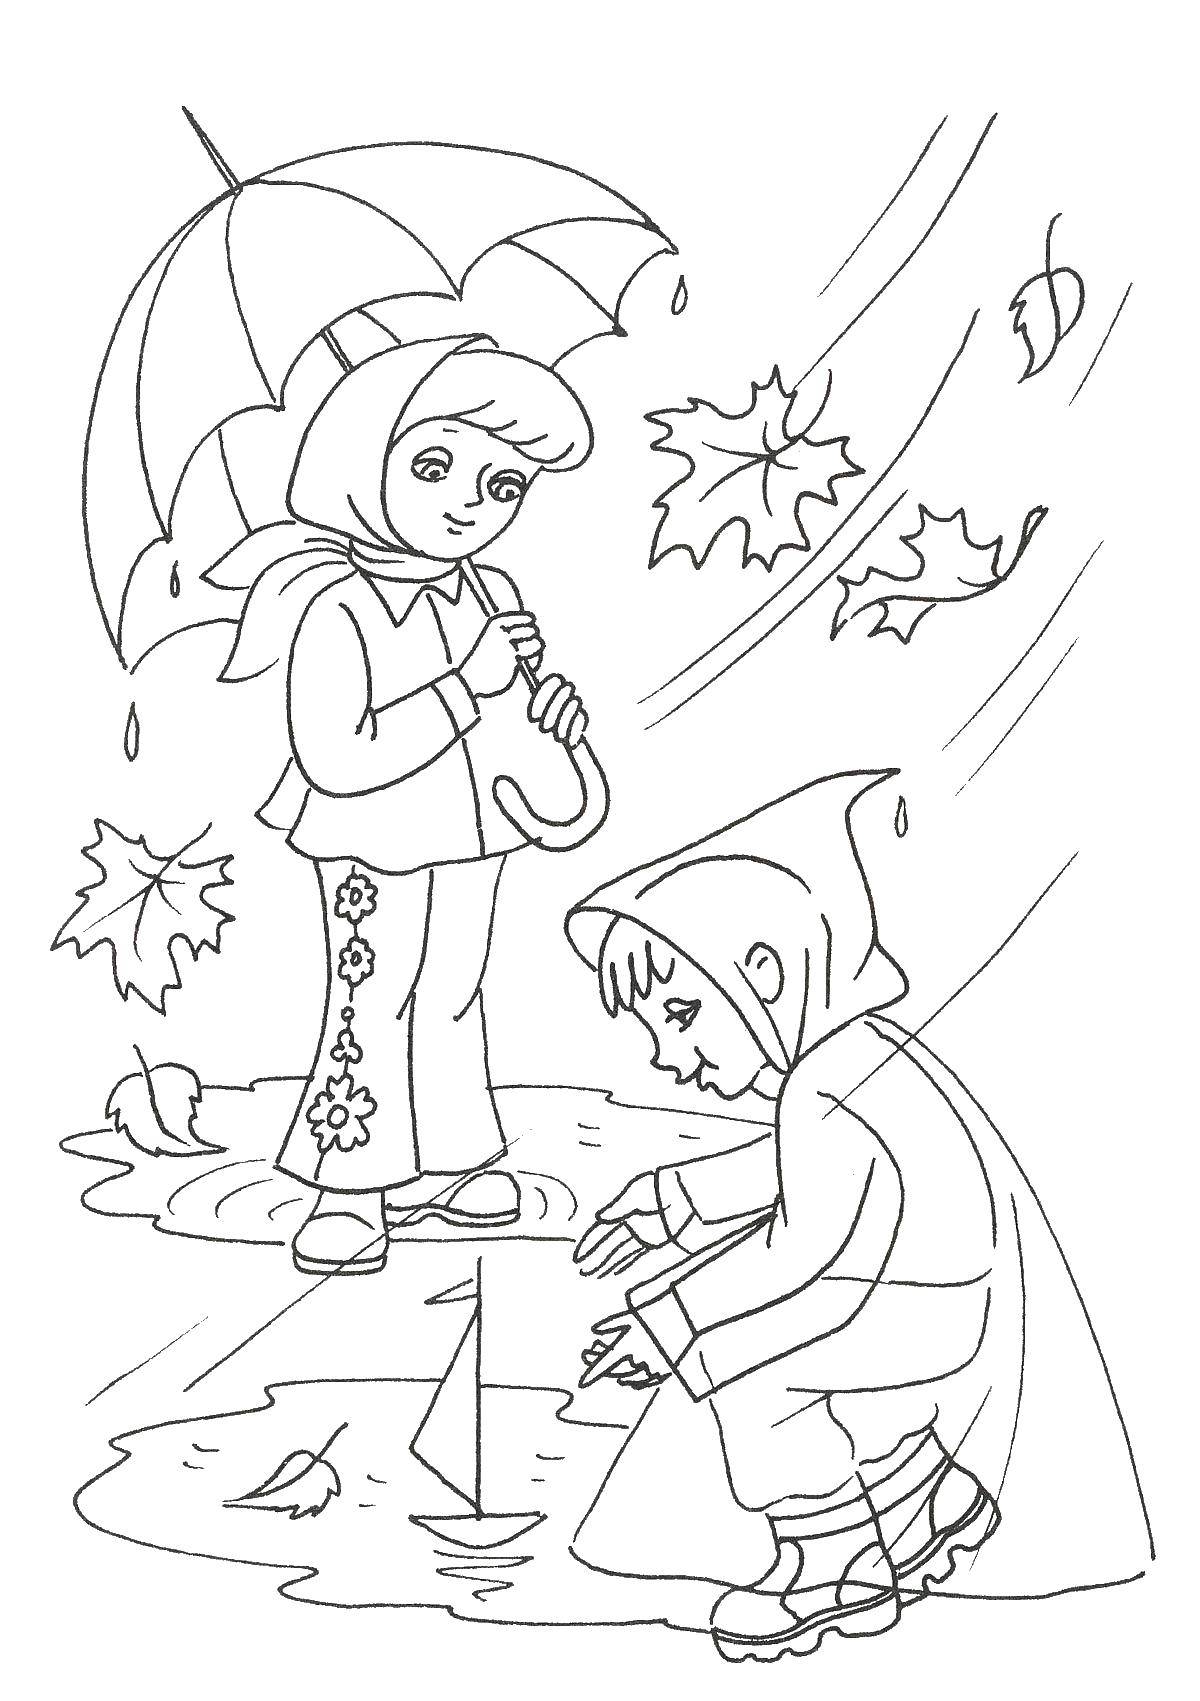 Название: Раскраска Дети играют под дождем. Категория: Люди. Теги: дети, дождь, зонтик.